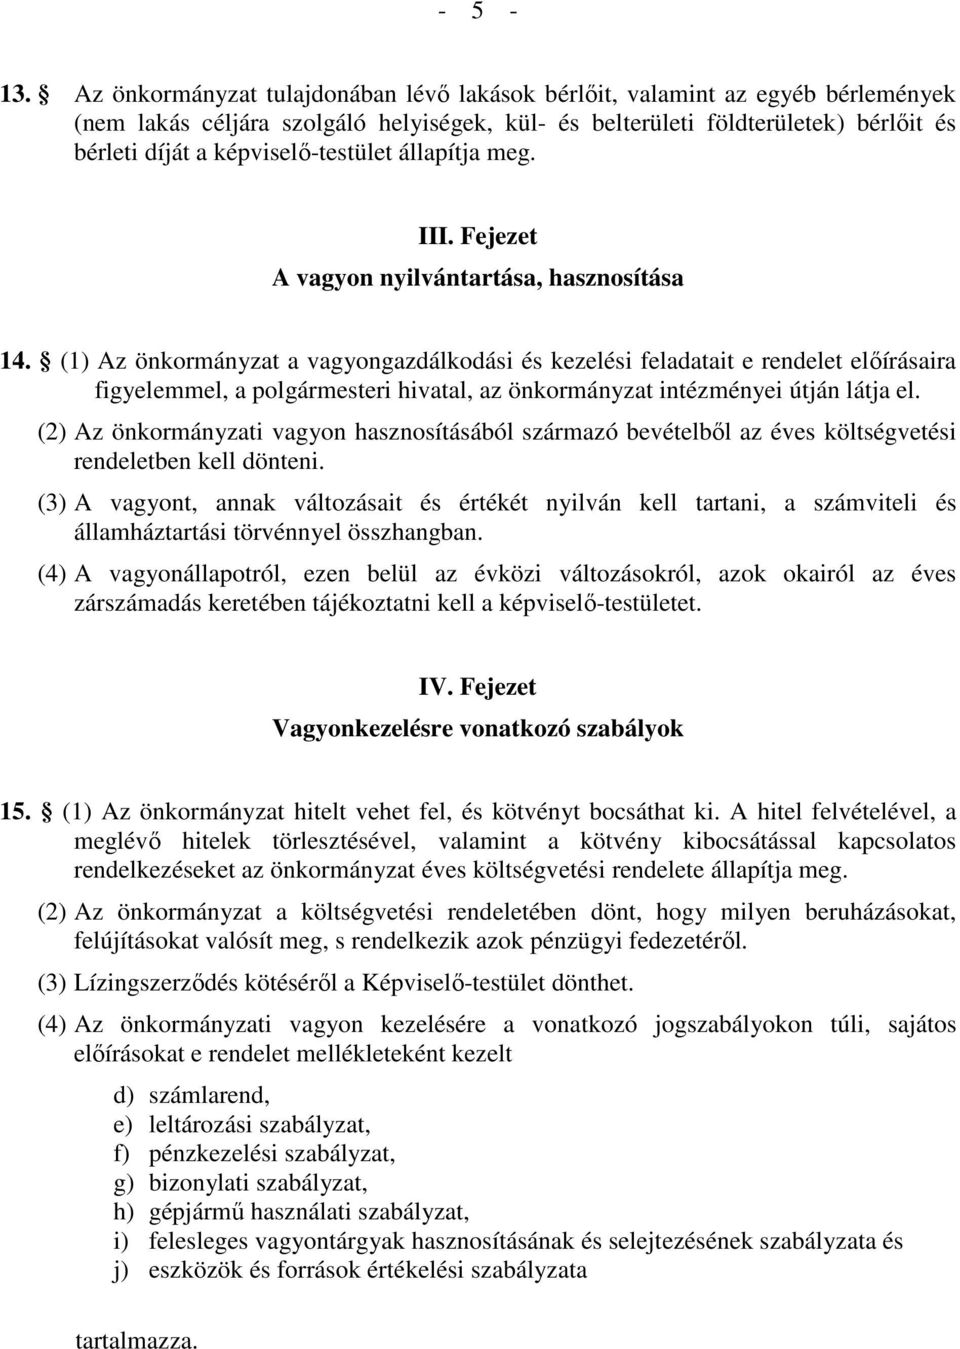 képviselı-testület állapítja meg. III. Fejezet A vagyon nyilvántartása, hasznosítása 14.